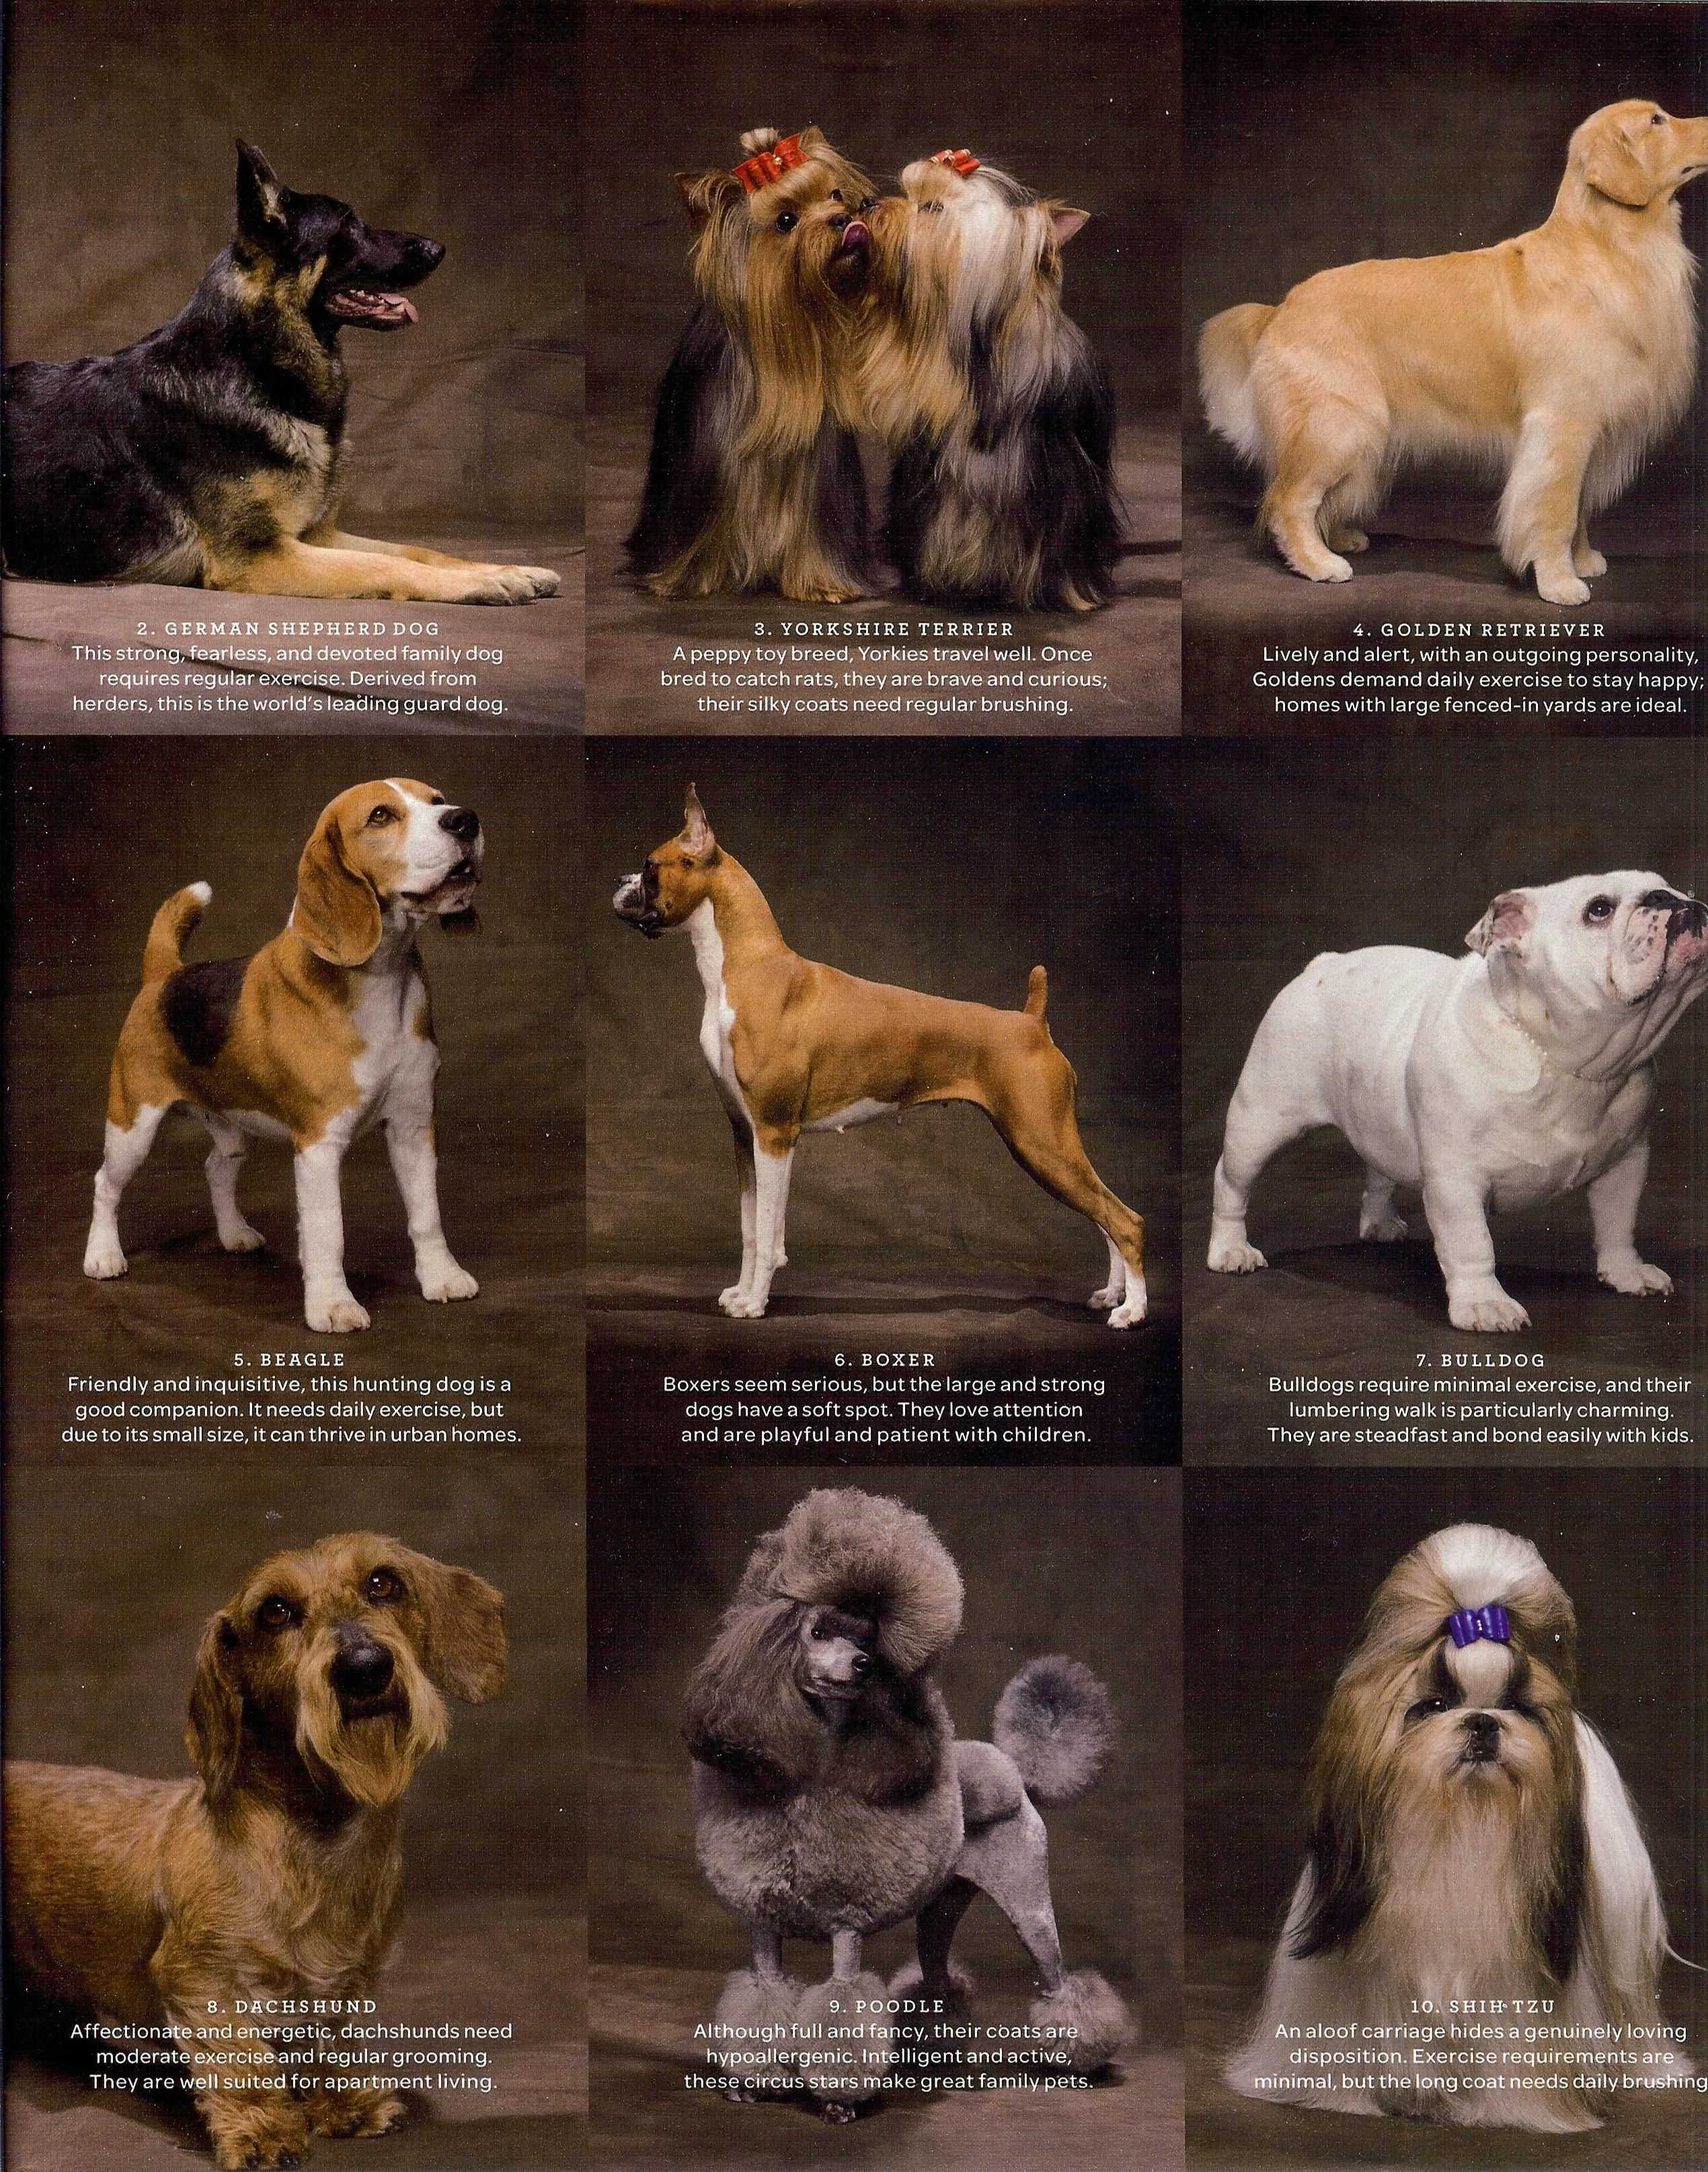 Породы собак средних размеров: описание и фото